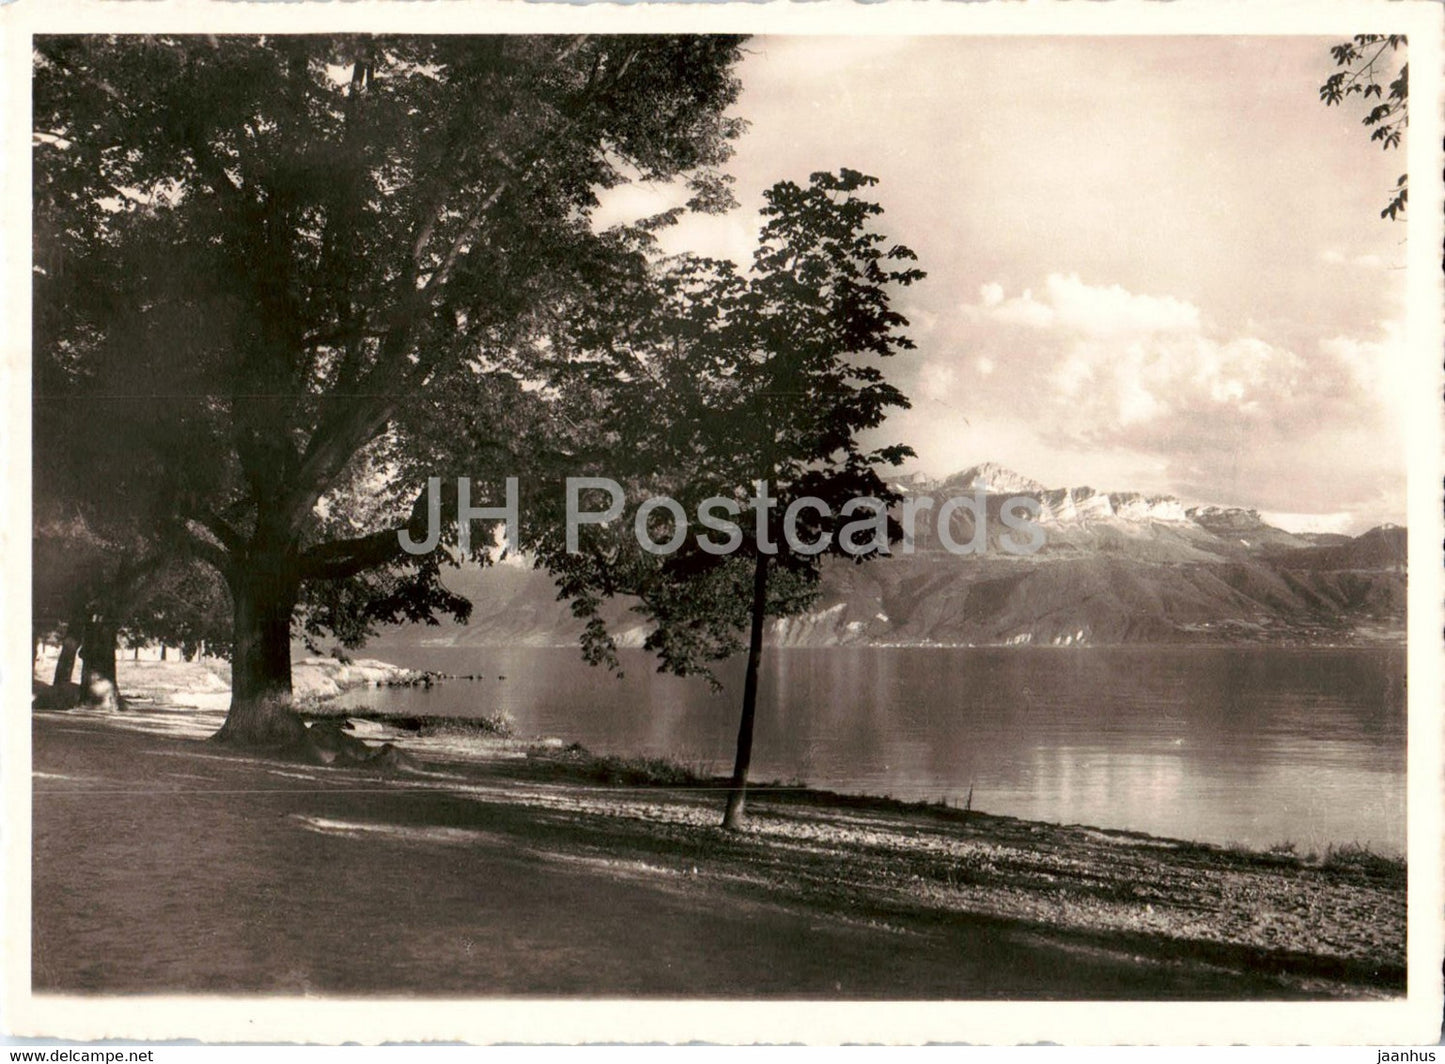 Lausanne - Bord du Lac et Dent d' Oche - 309 - old postcard - 1936 - Switzerland - used - JH Postcards